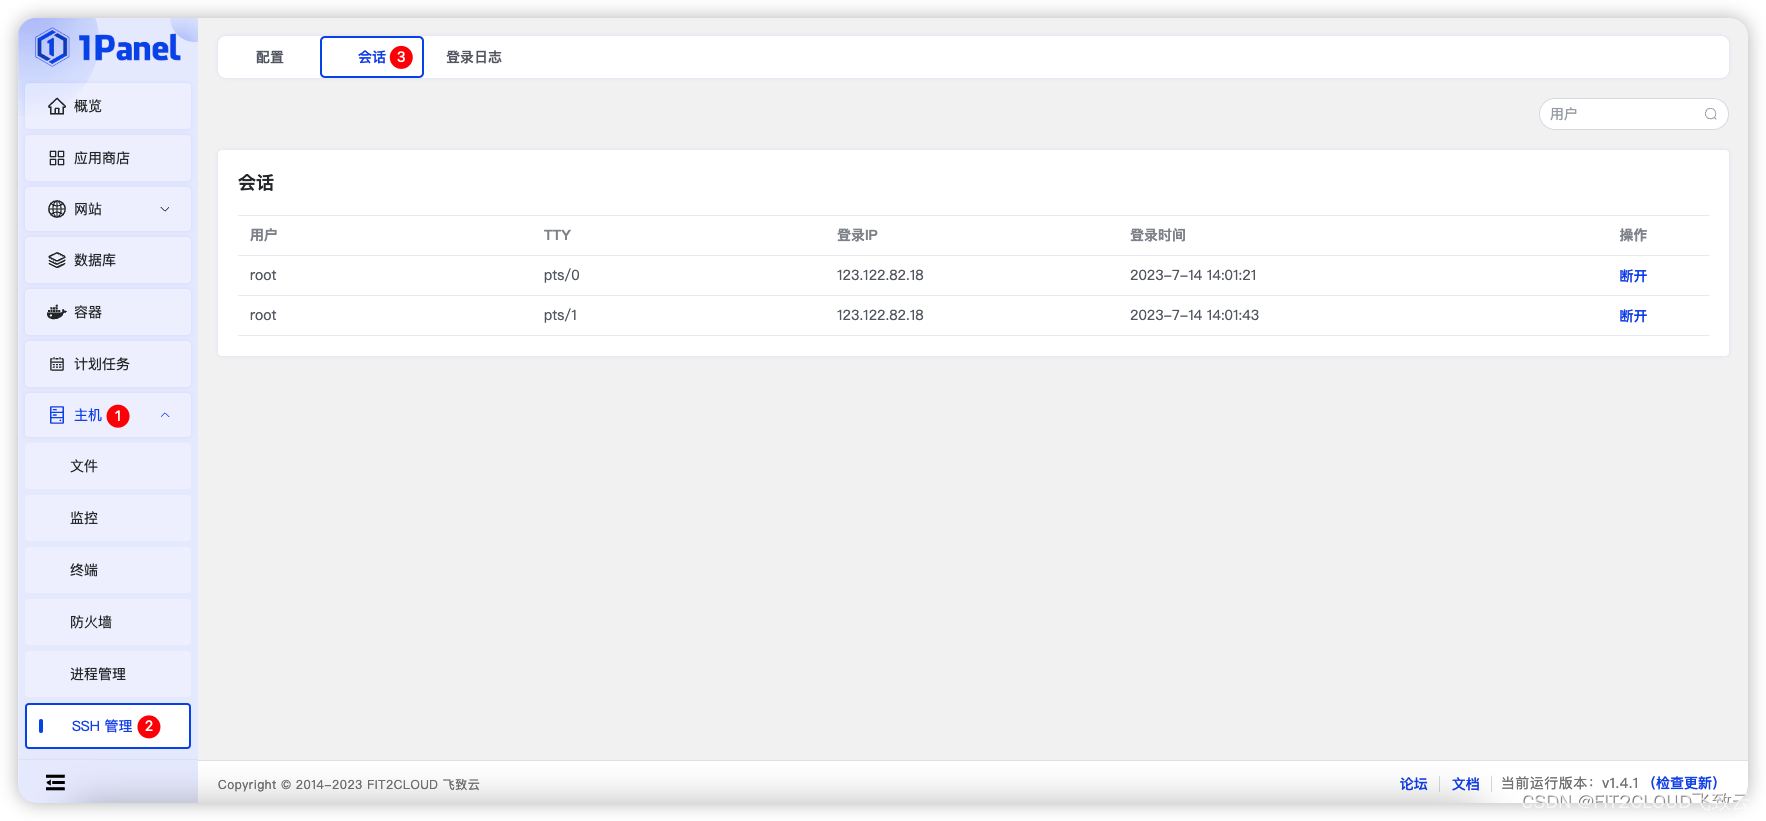 新增进程管理、SSH会话管理功能，1Panel开源面板v1.4.0发布